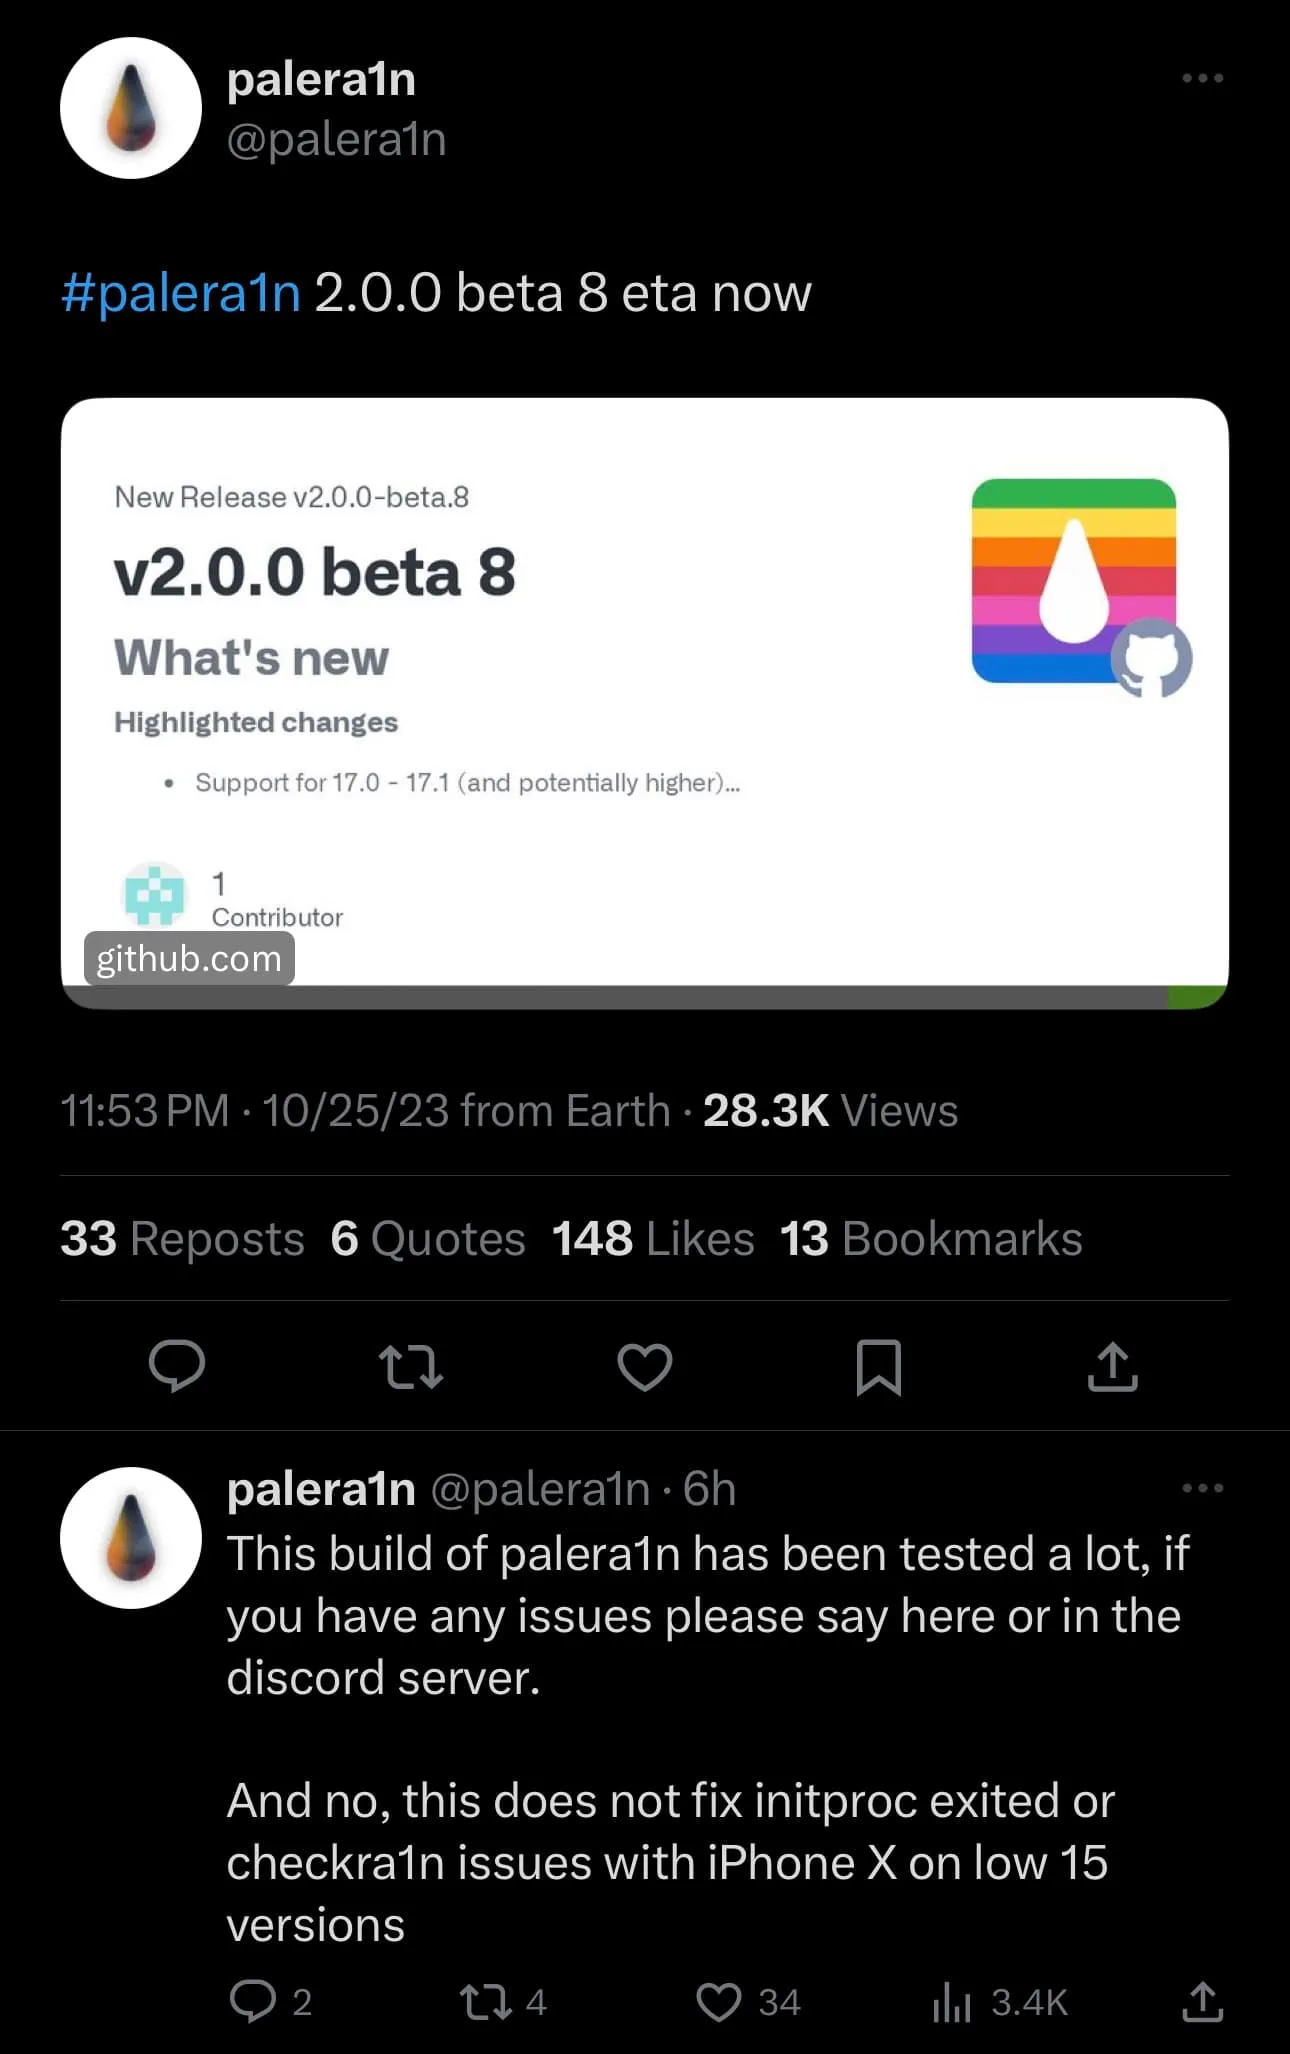 A equipe palera1n anuncia o lançamento da versão 2.0.0 beta 8.